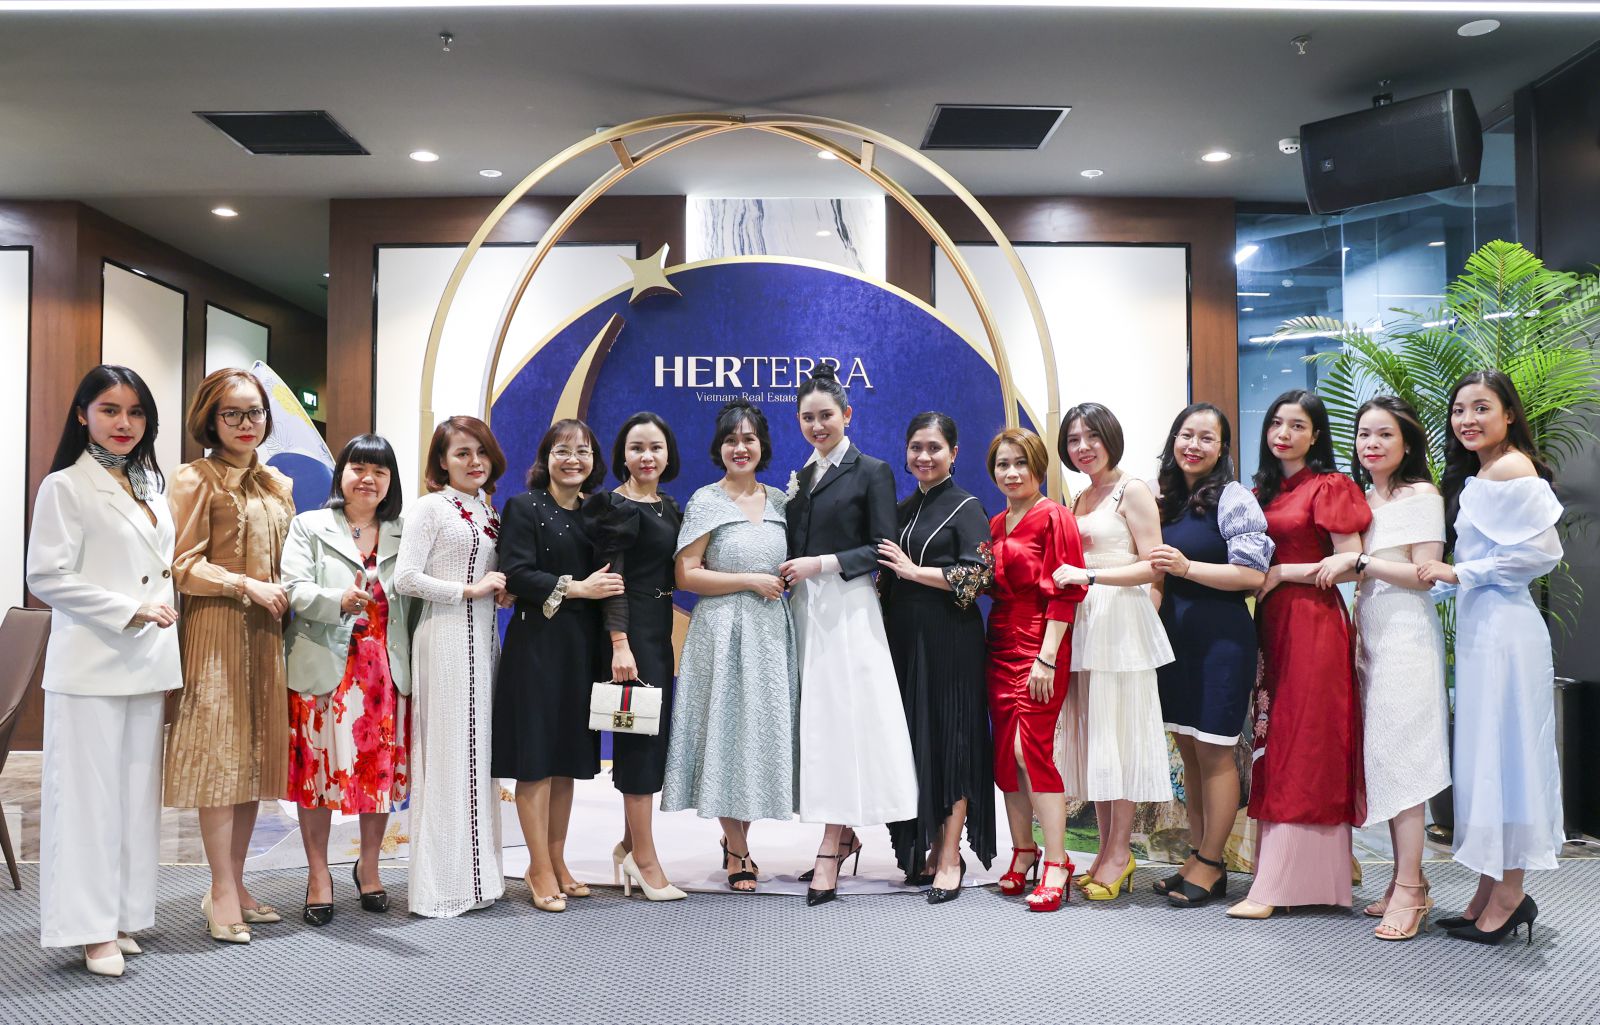 Các Doanh nhân tại lễ ra mắt Tạp chí chuyên về BĐS mang tên Her Terra - ấn phẩm được xây dựng và truyền cảm hứng bởi những nữ doanh nhân trong lĩnh vực BĐS 